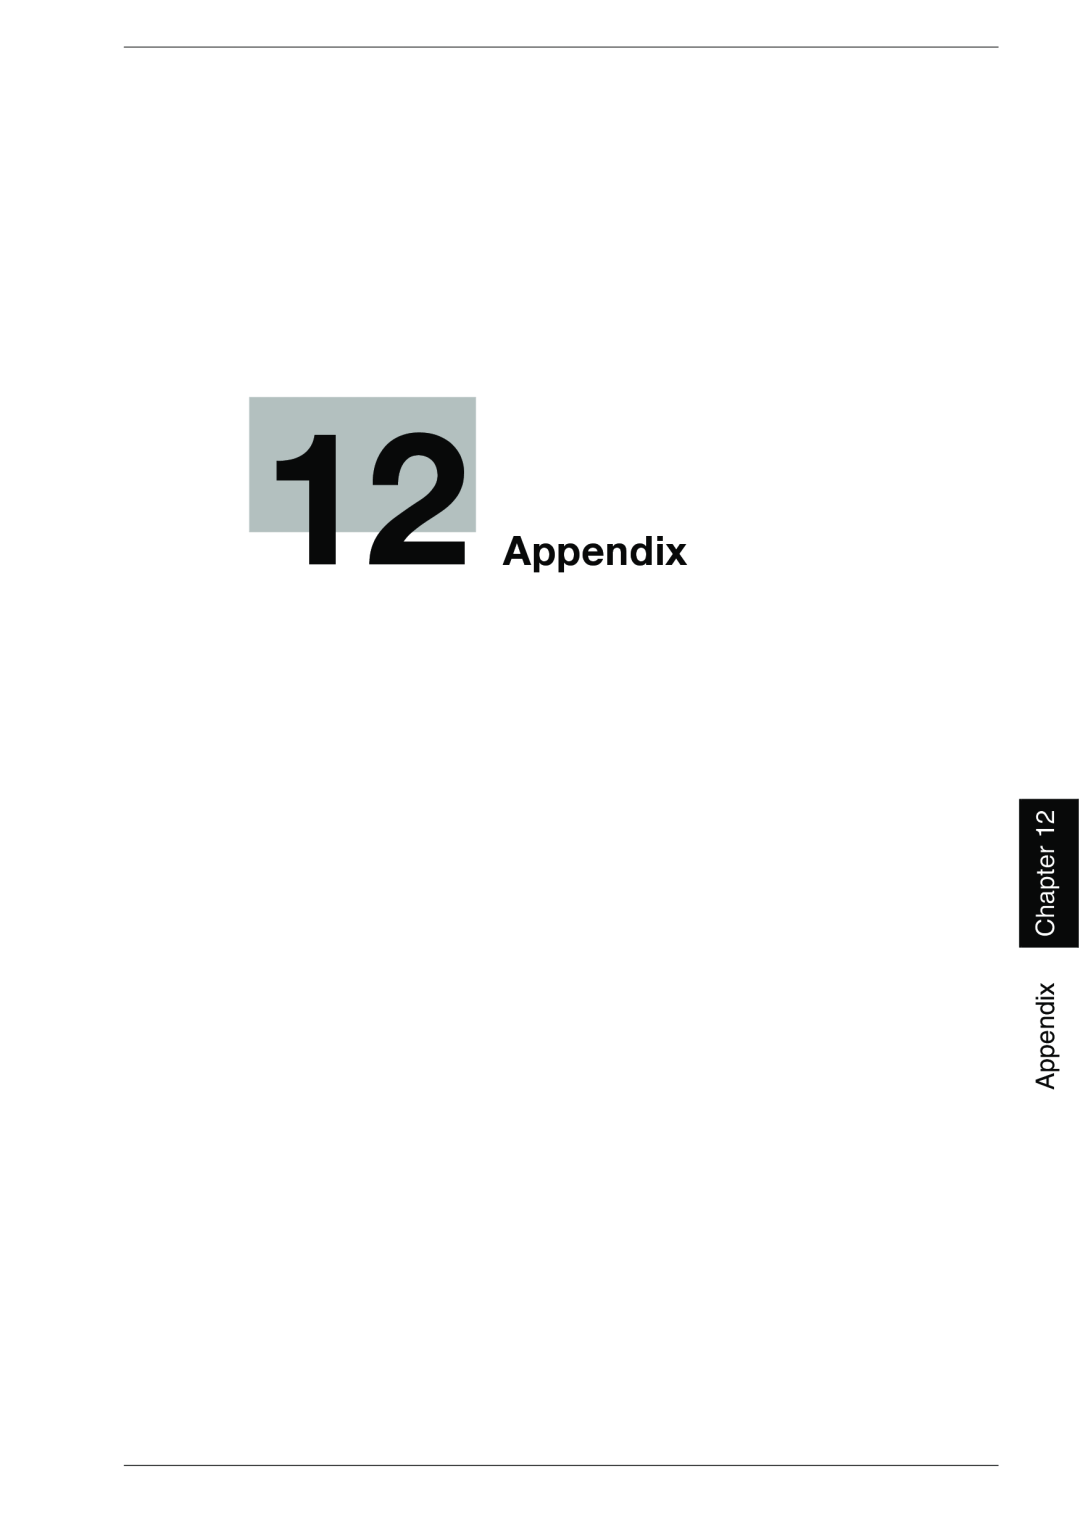 Konica Minolta 1050E appendix 12Appendix, Chapter 